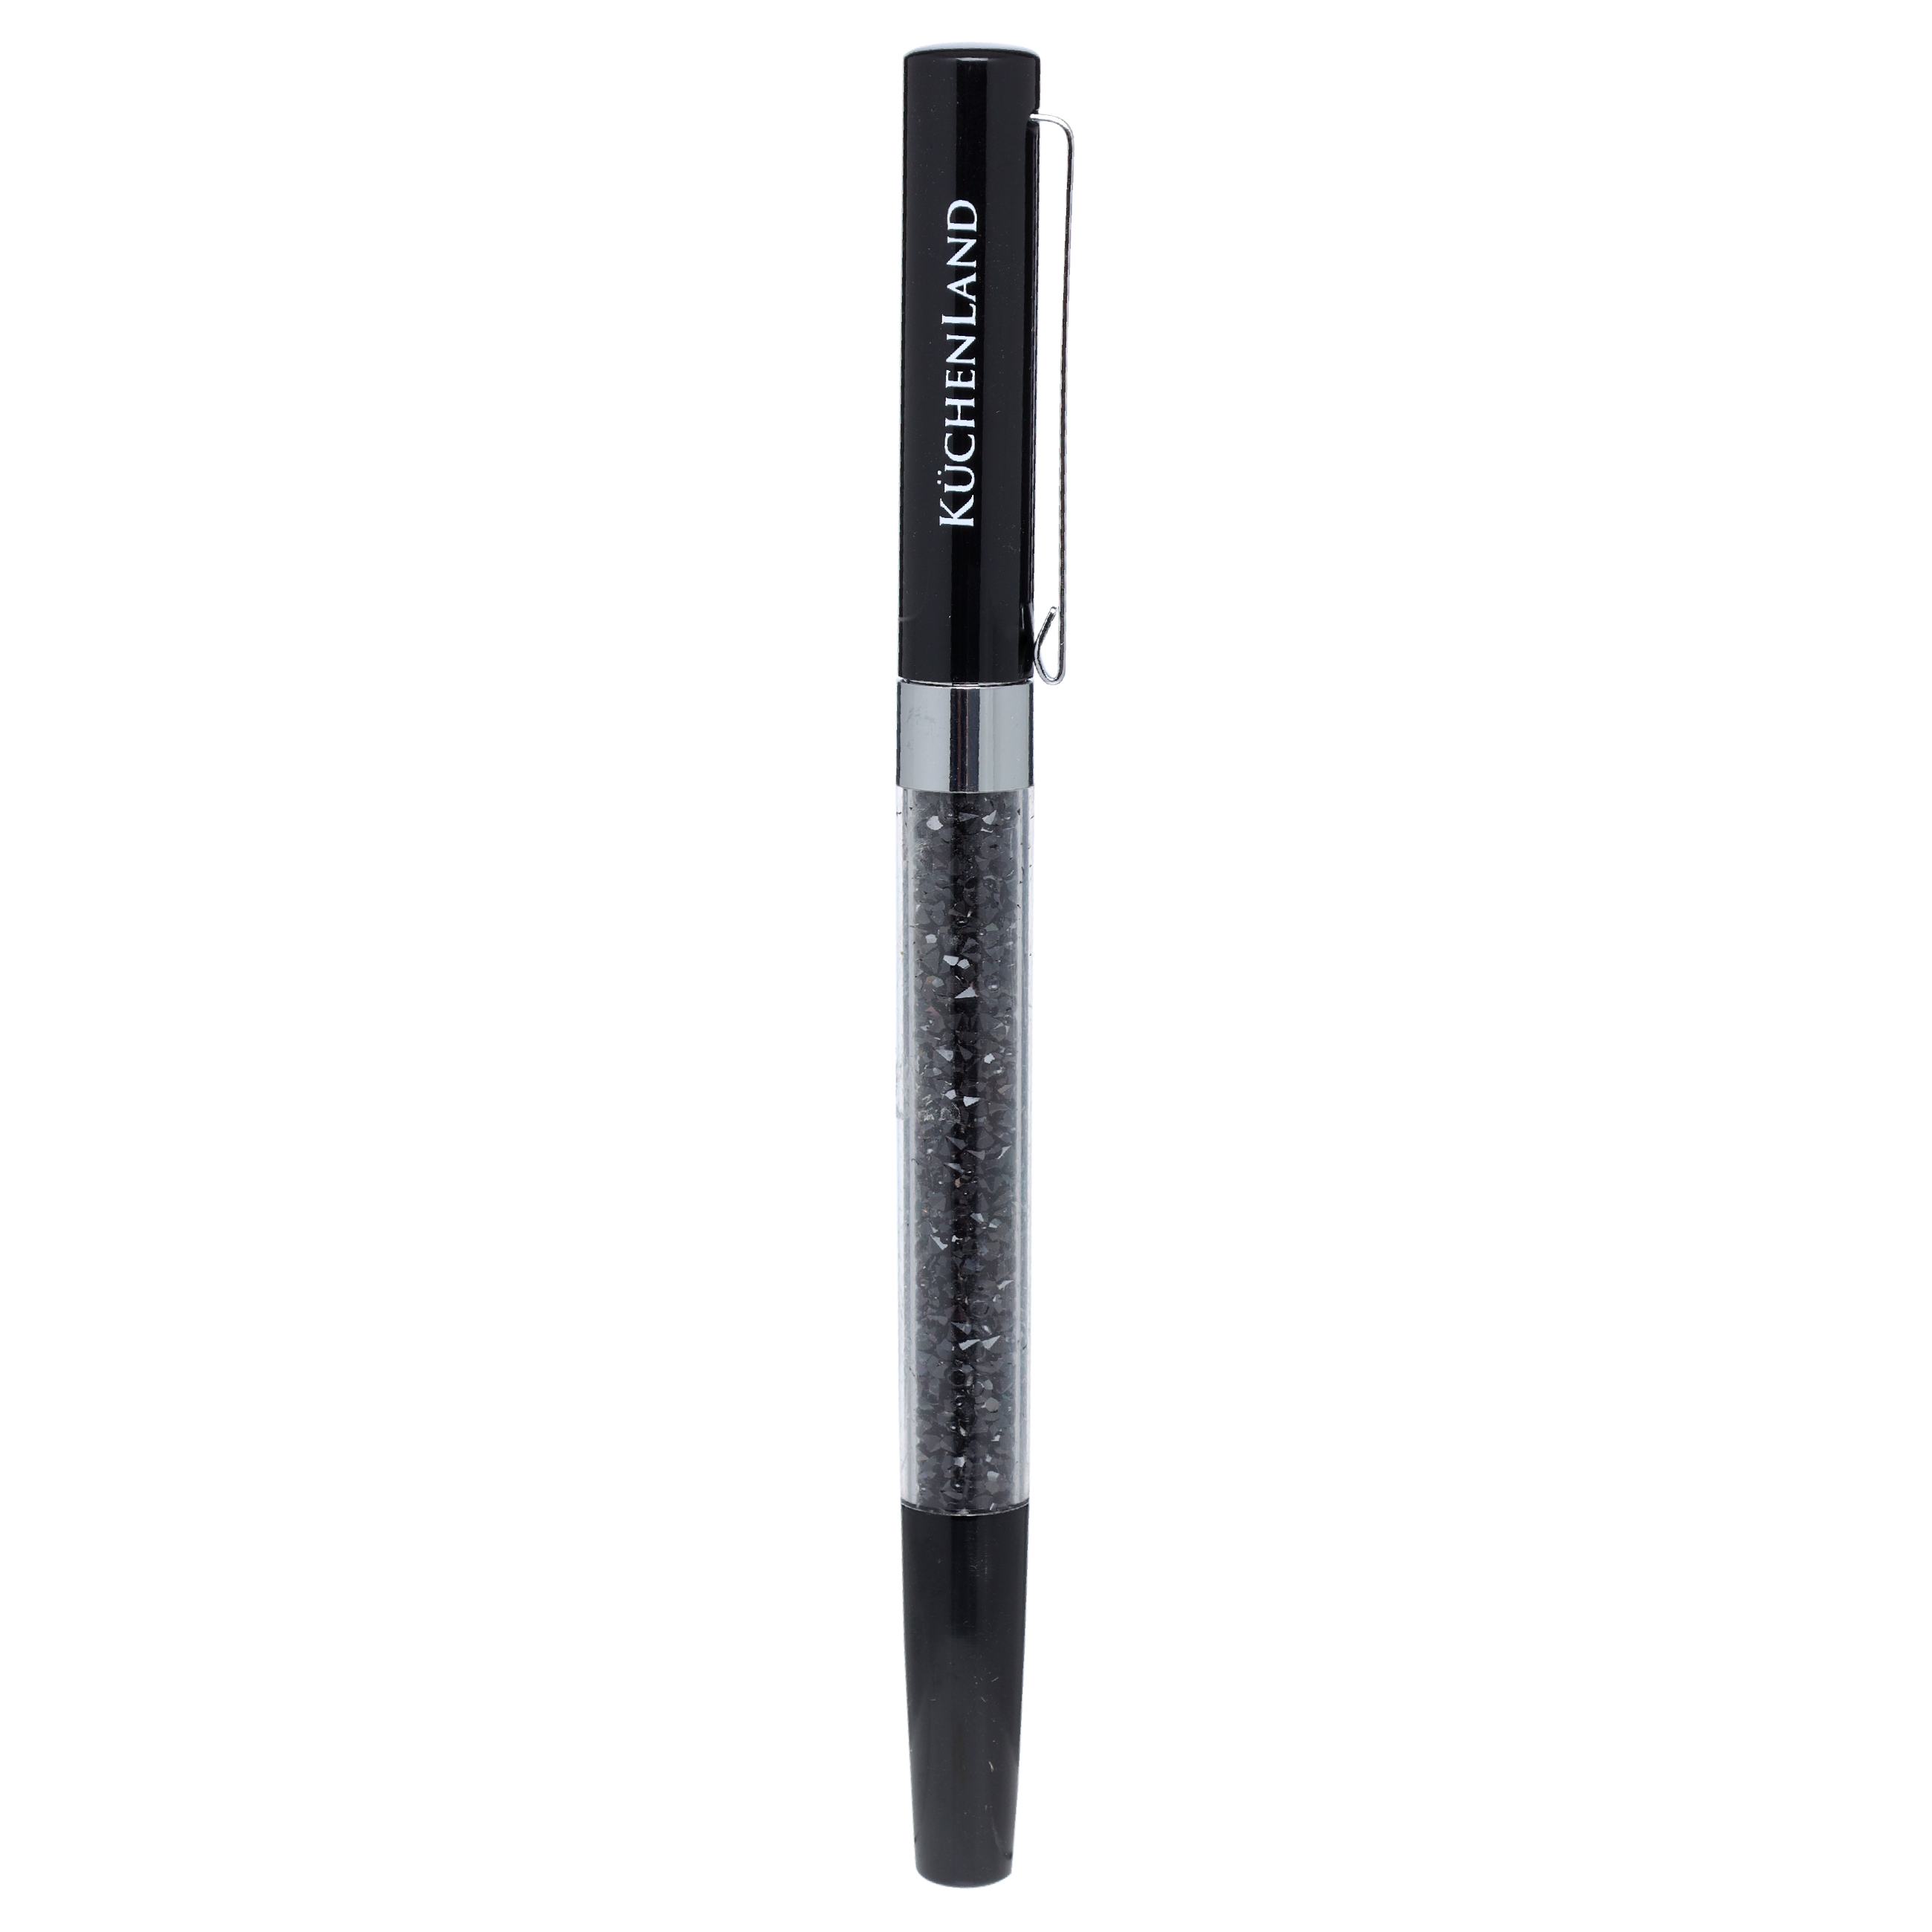 Ручка гелевая, 15 см, сталь, черная, Кристаллы, Draw cristal изображение № 2